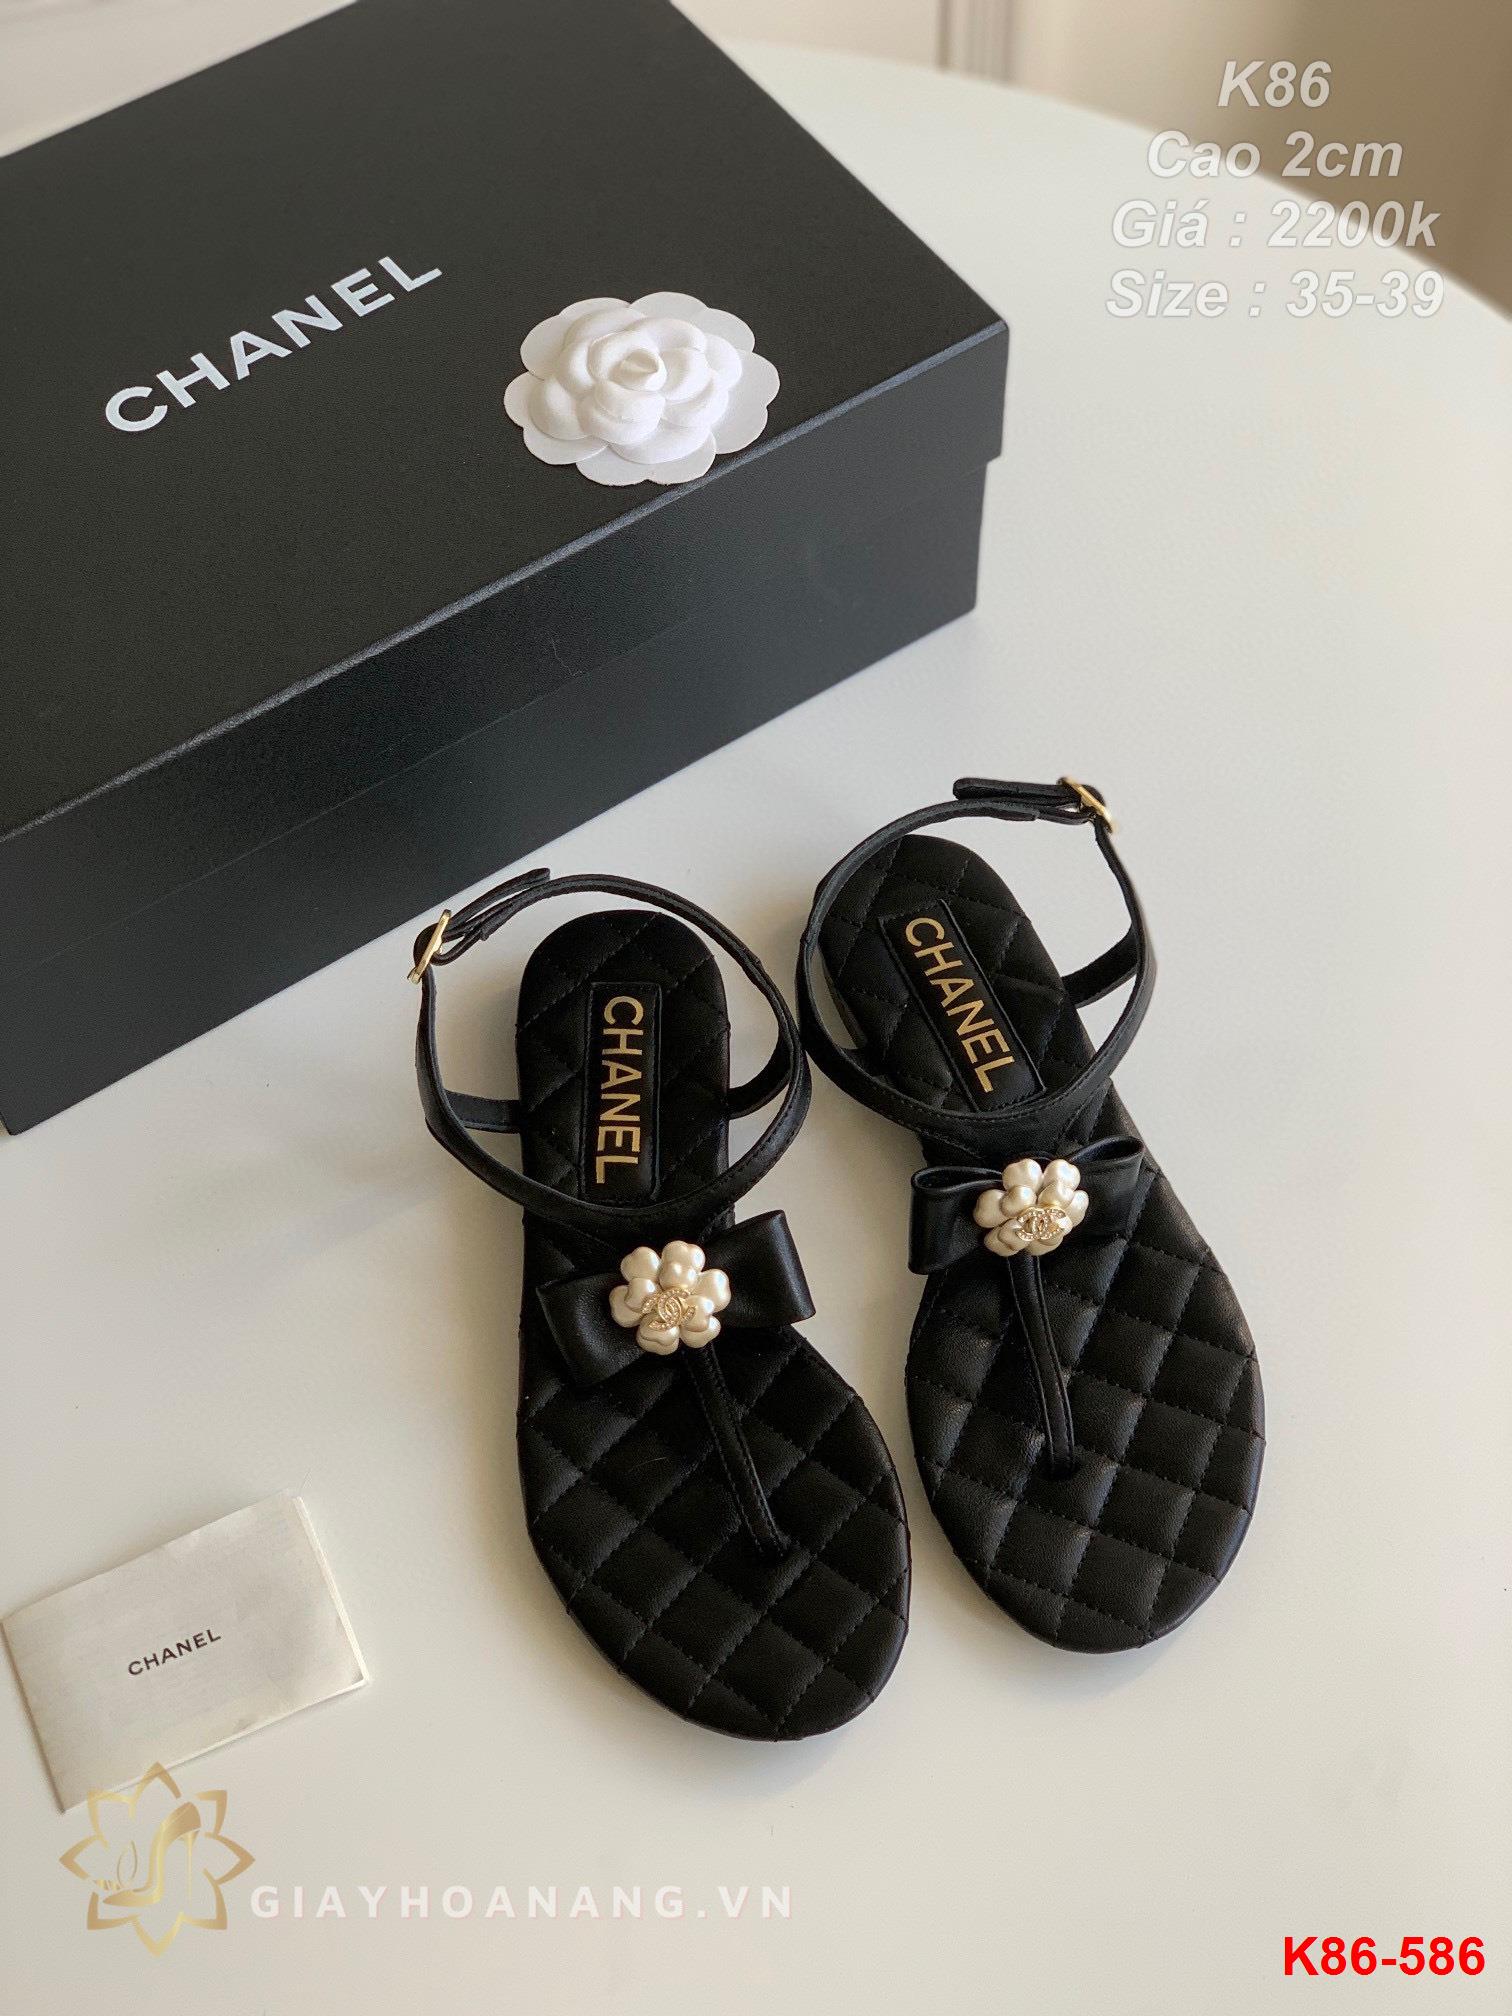 K86-586 Chanel sandal cao gót 2cm siêu cấp